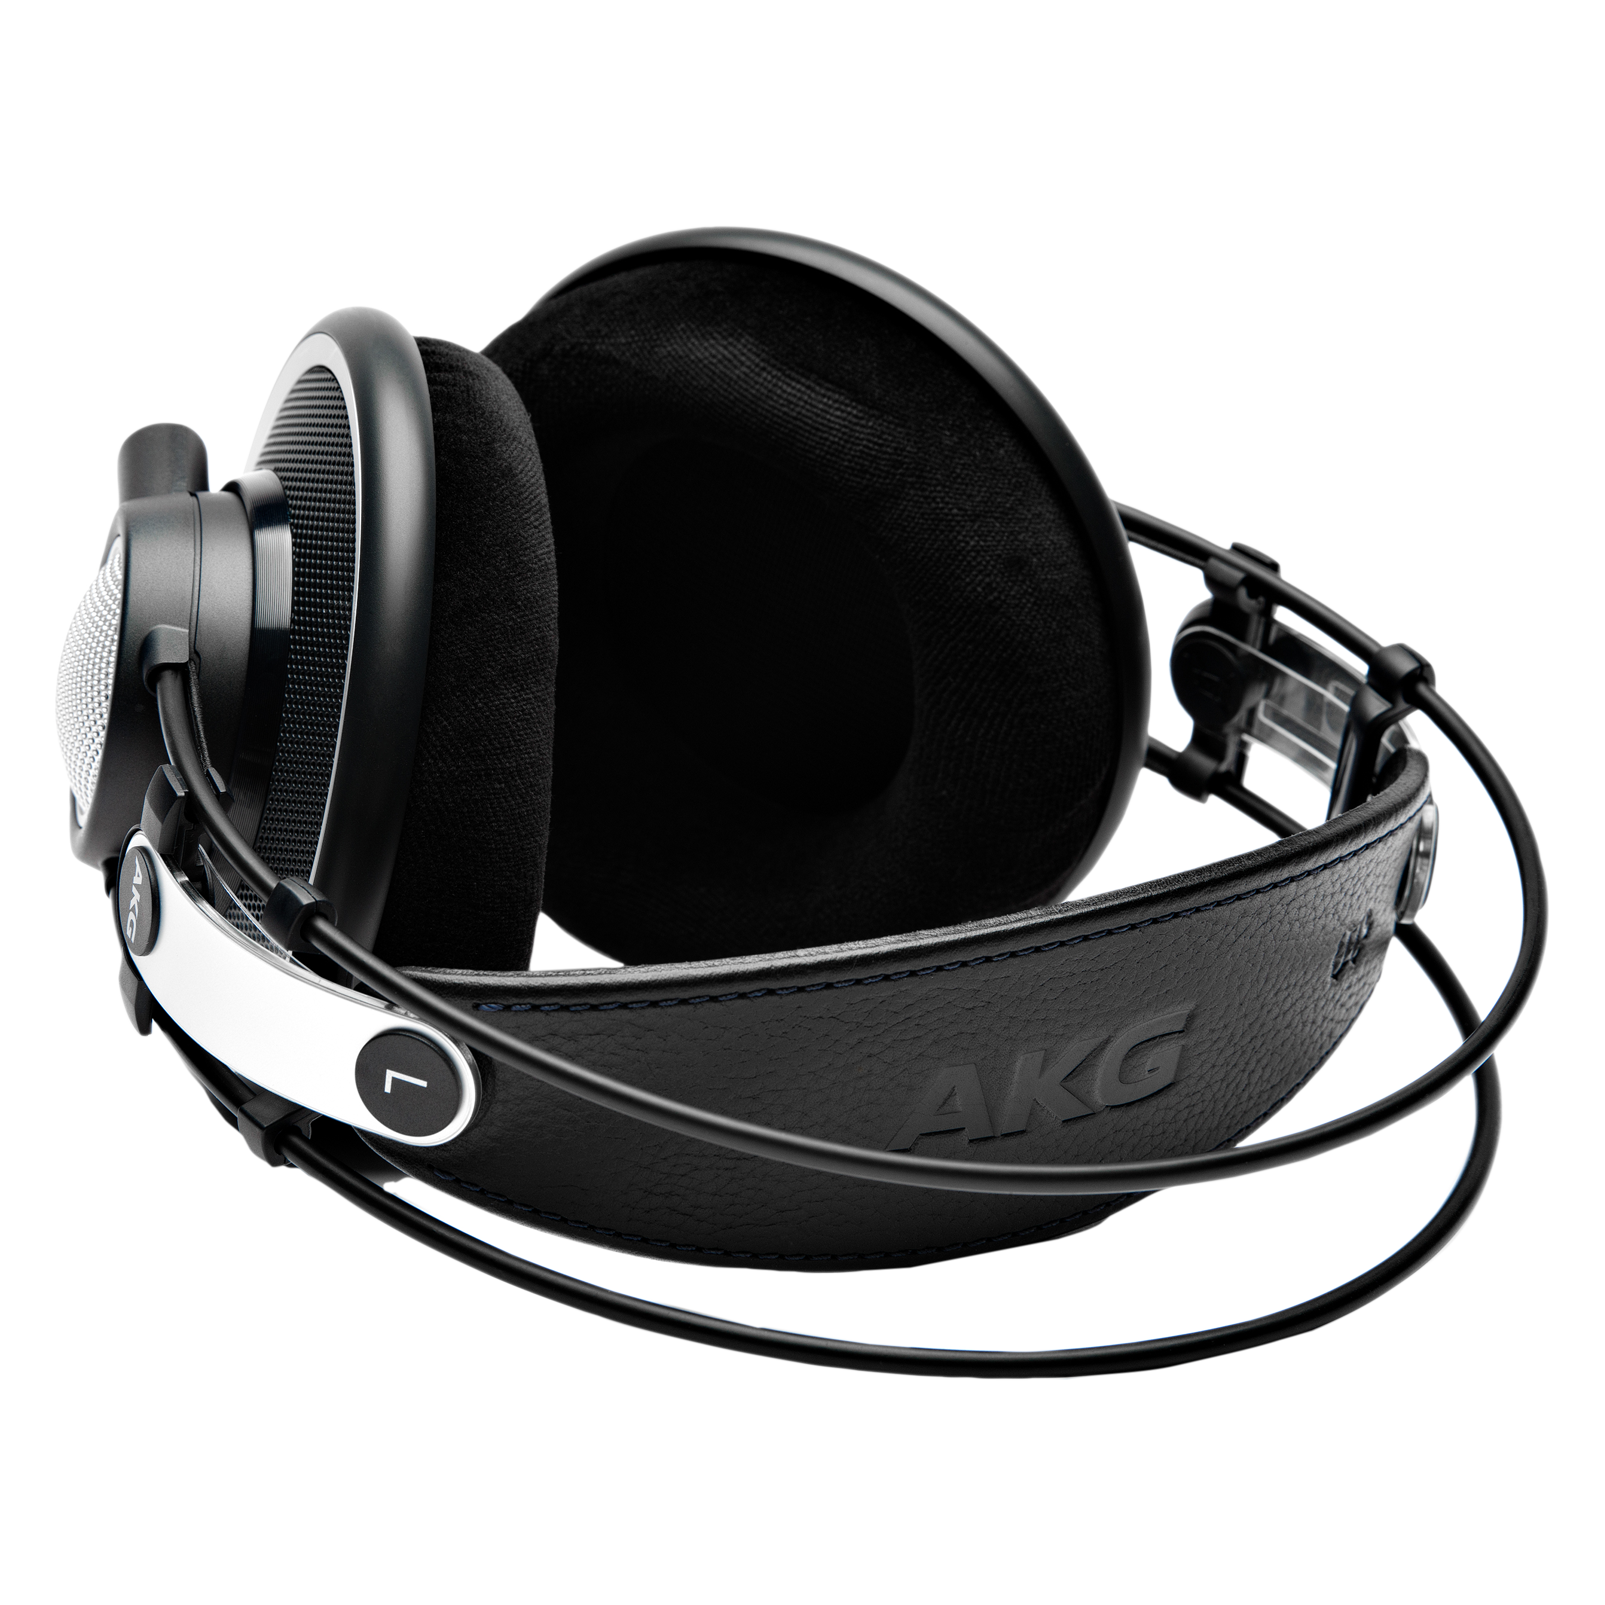 K702 (B-Stock) - Black - Reference studio headphones - Detailshot 1